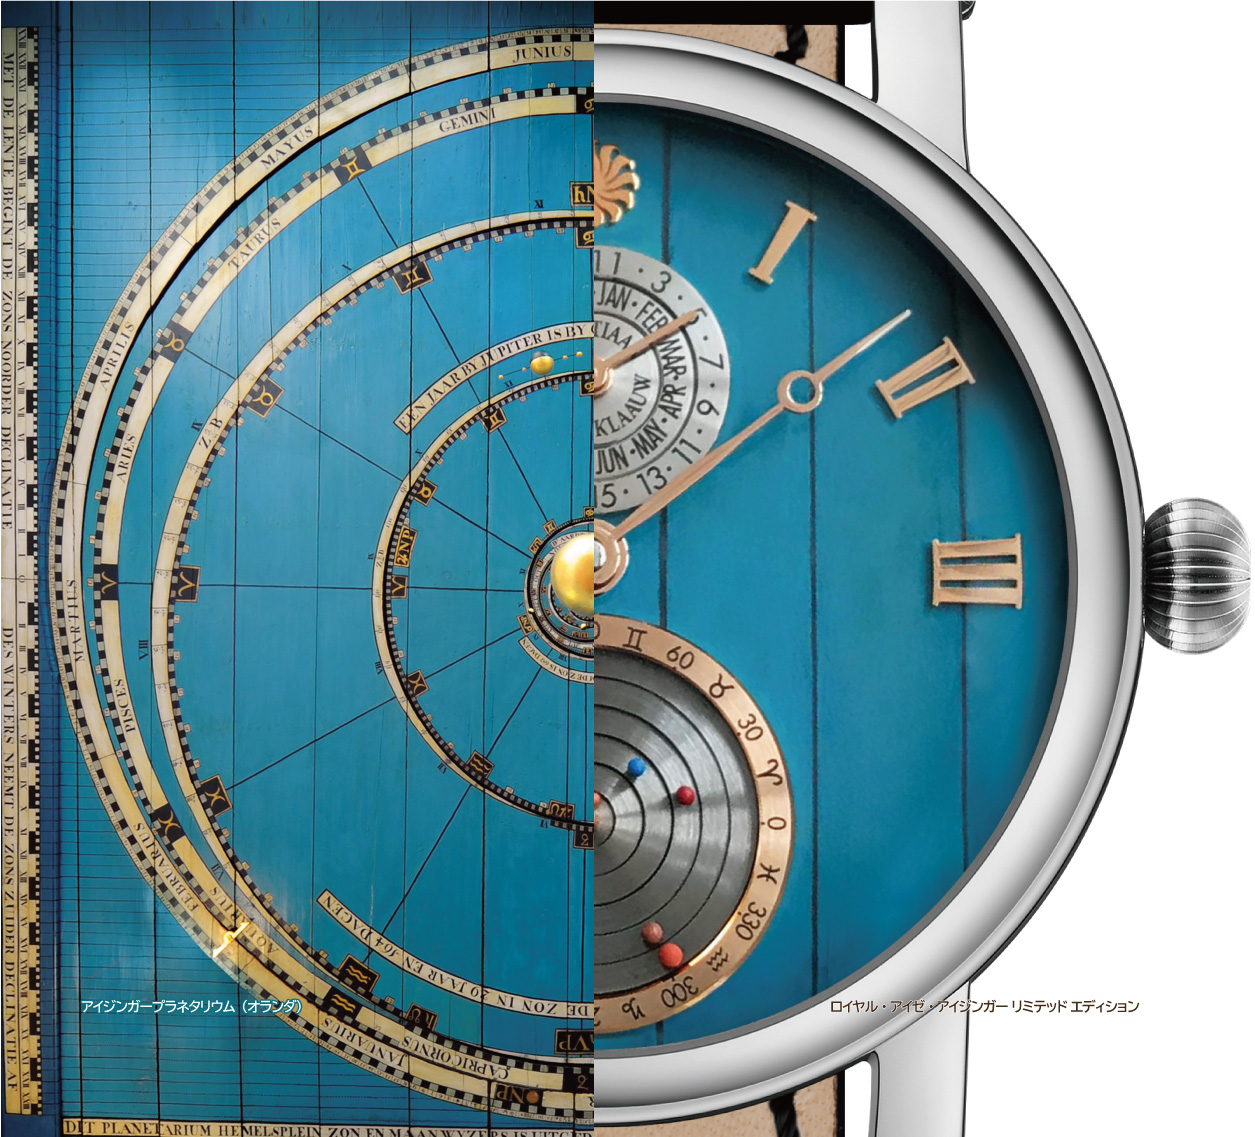 世界最古のプラネタリウムがモデル 天文腕時計を時の記念日に特別公開